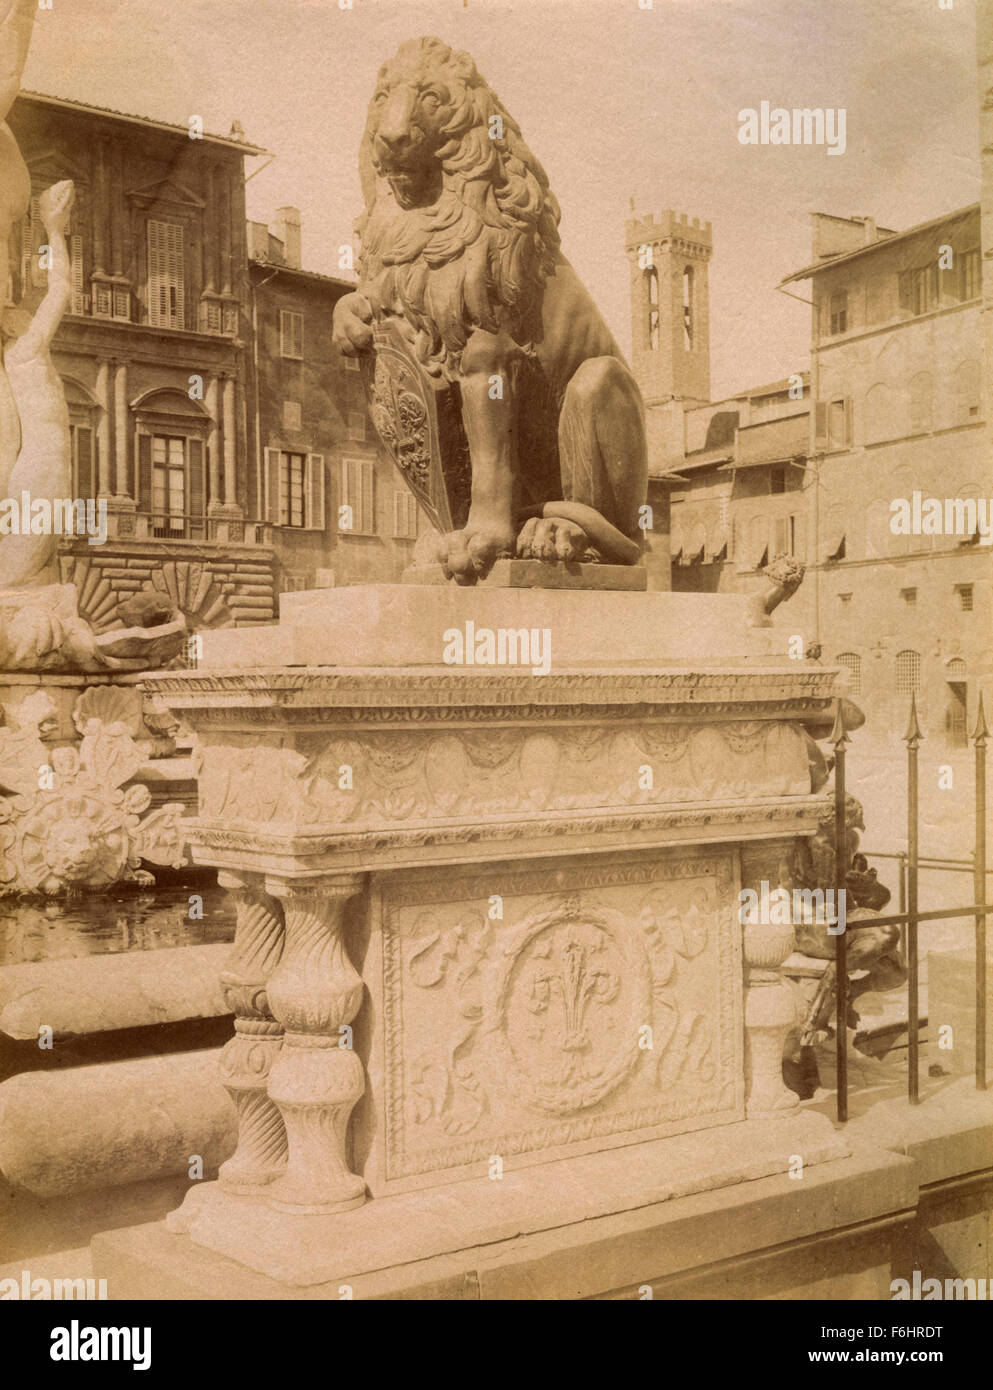 Leone sagte Mazzocco, Skulpturen von Donatello, Florenz, Italien Stockfoto